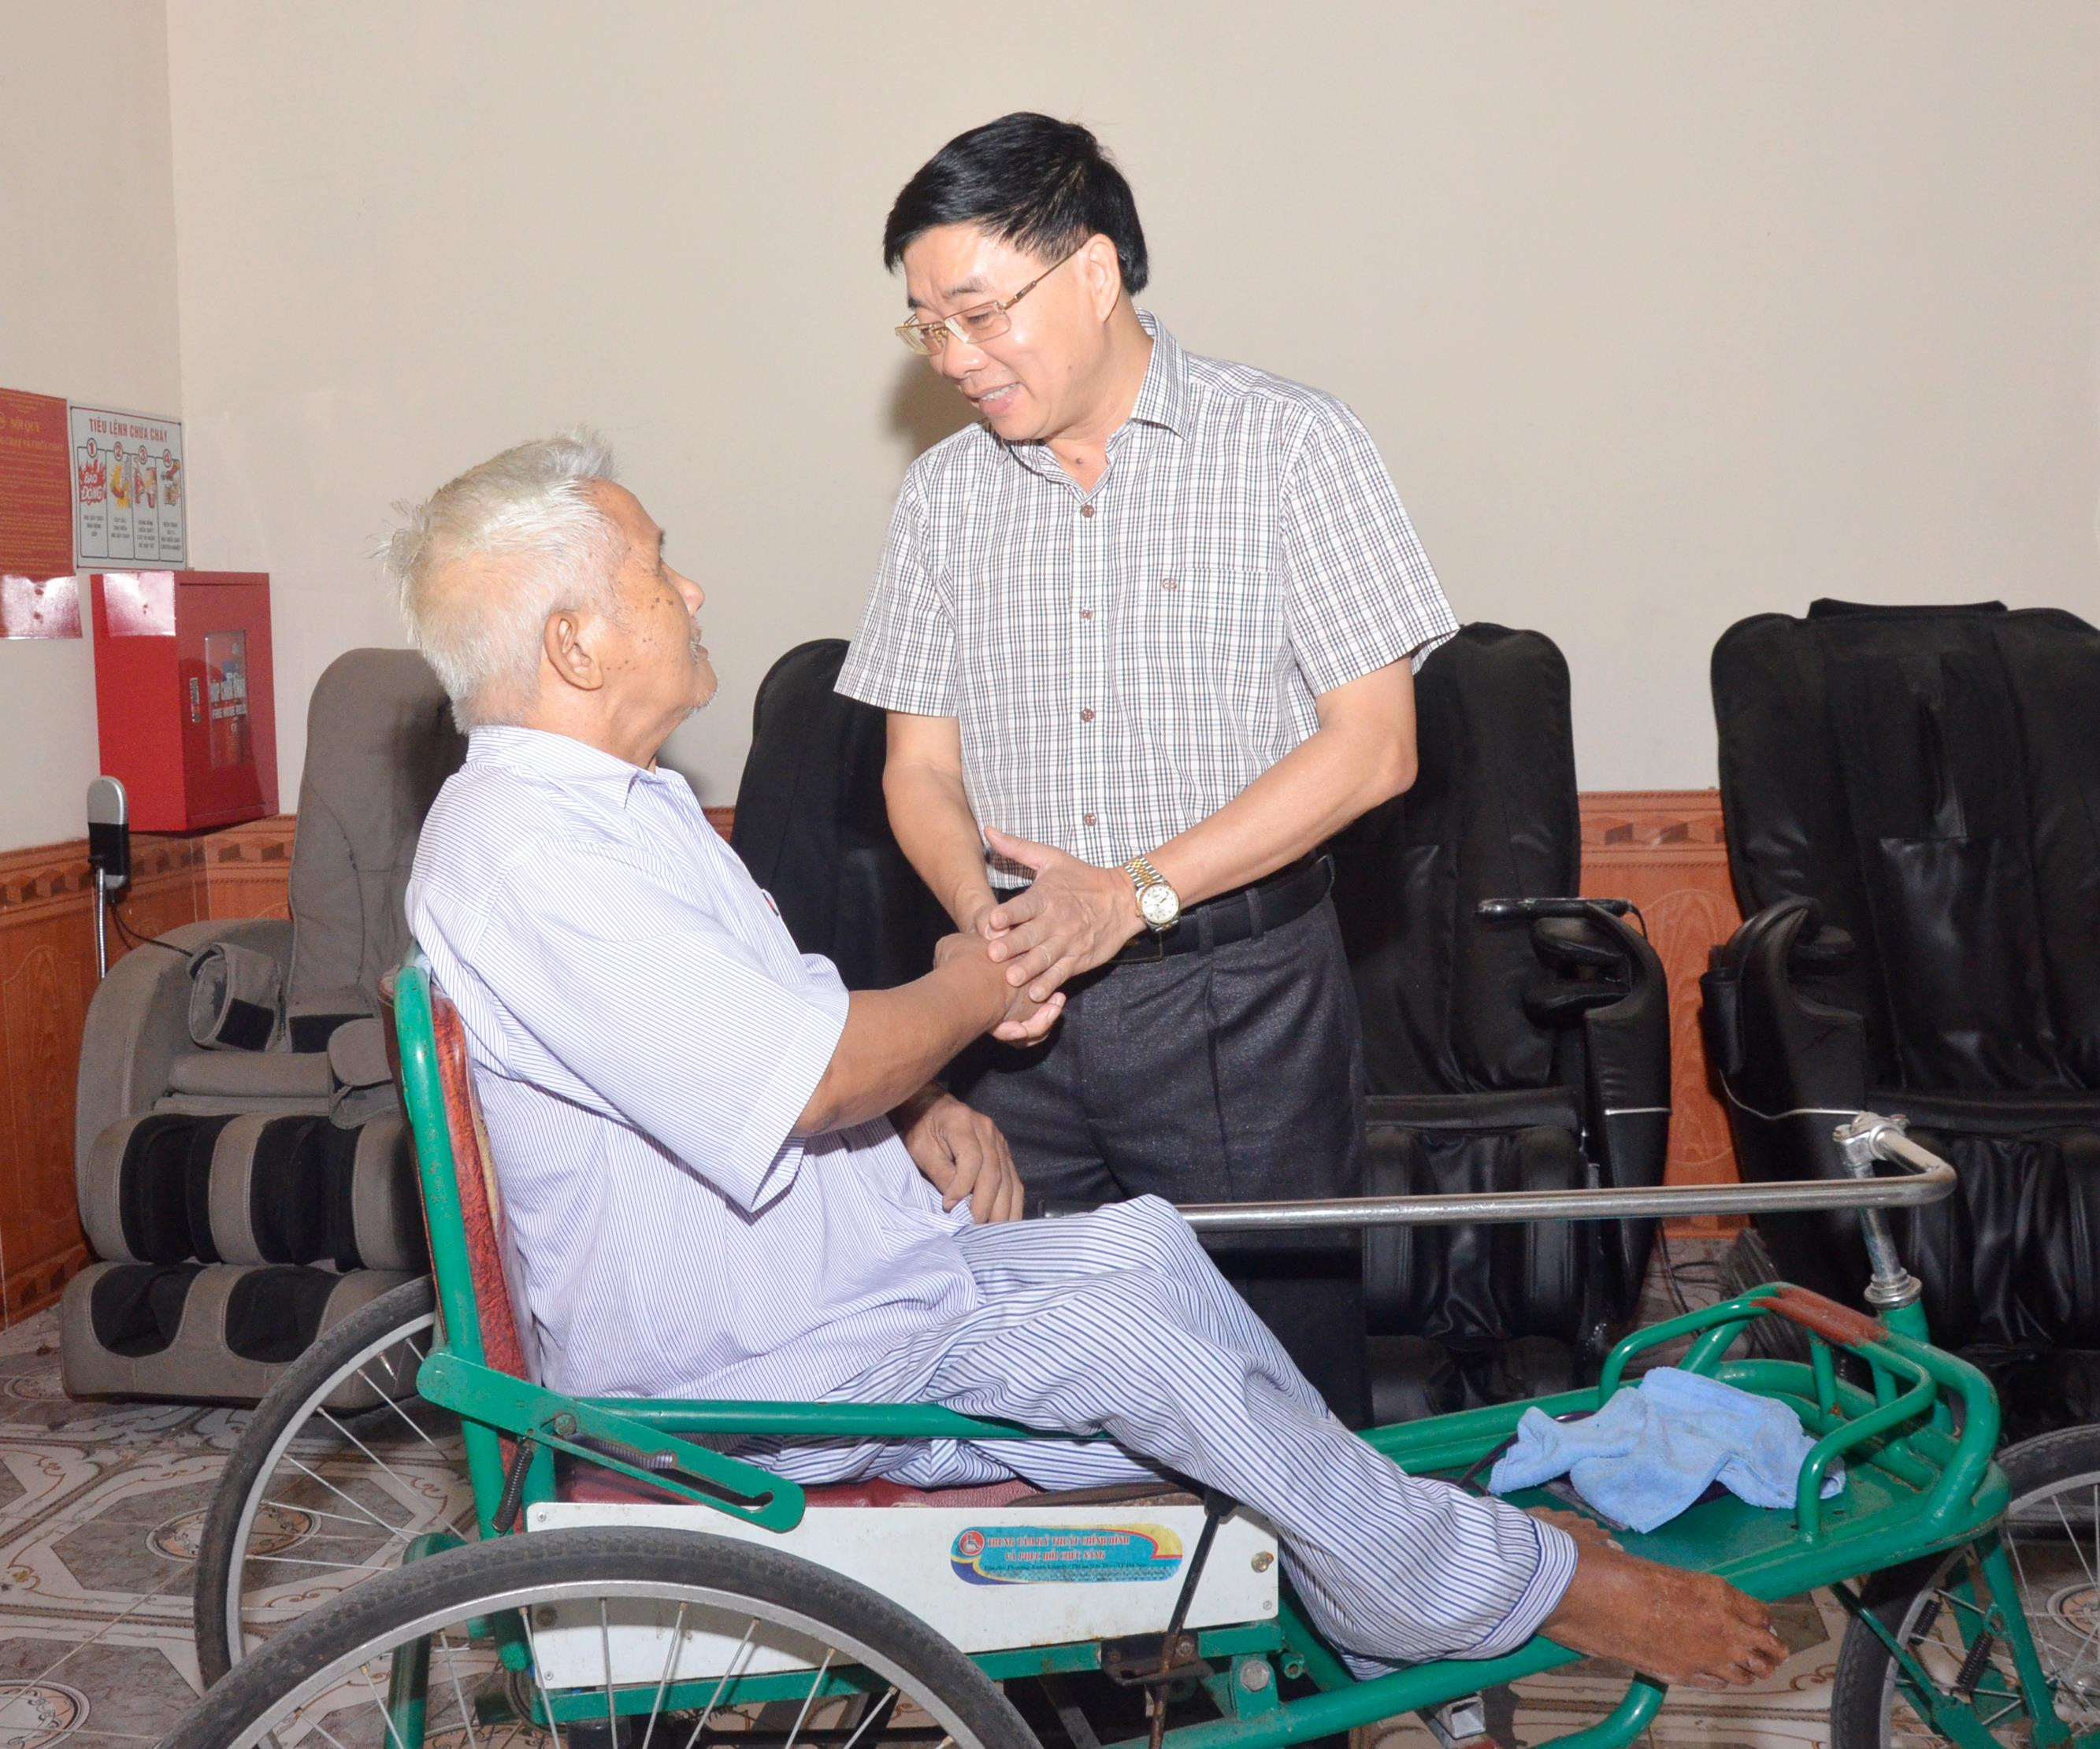 Đồng chí Nguyễn Văn Thông thăm hỏi ân cần các thương binh đang được chăm sóc tại Trung tâm điều dưỡng thương binh Nghệ An. Ảnh: Thanh Lê